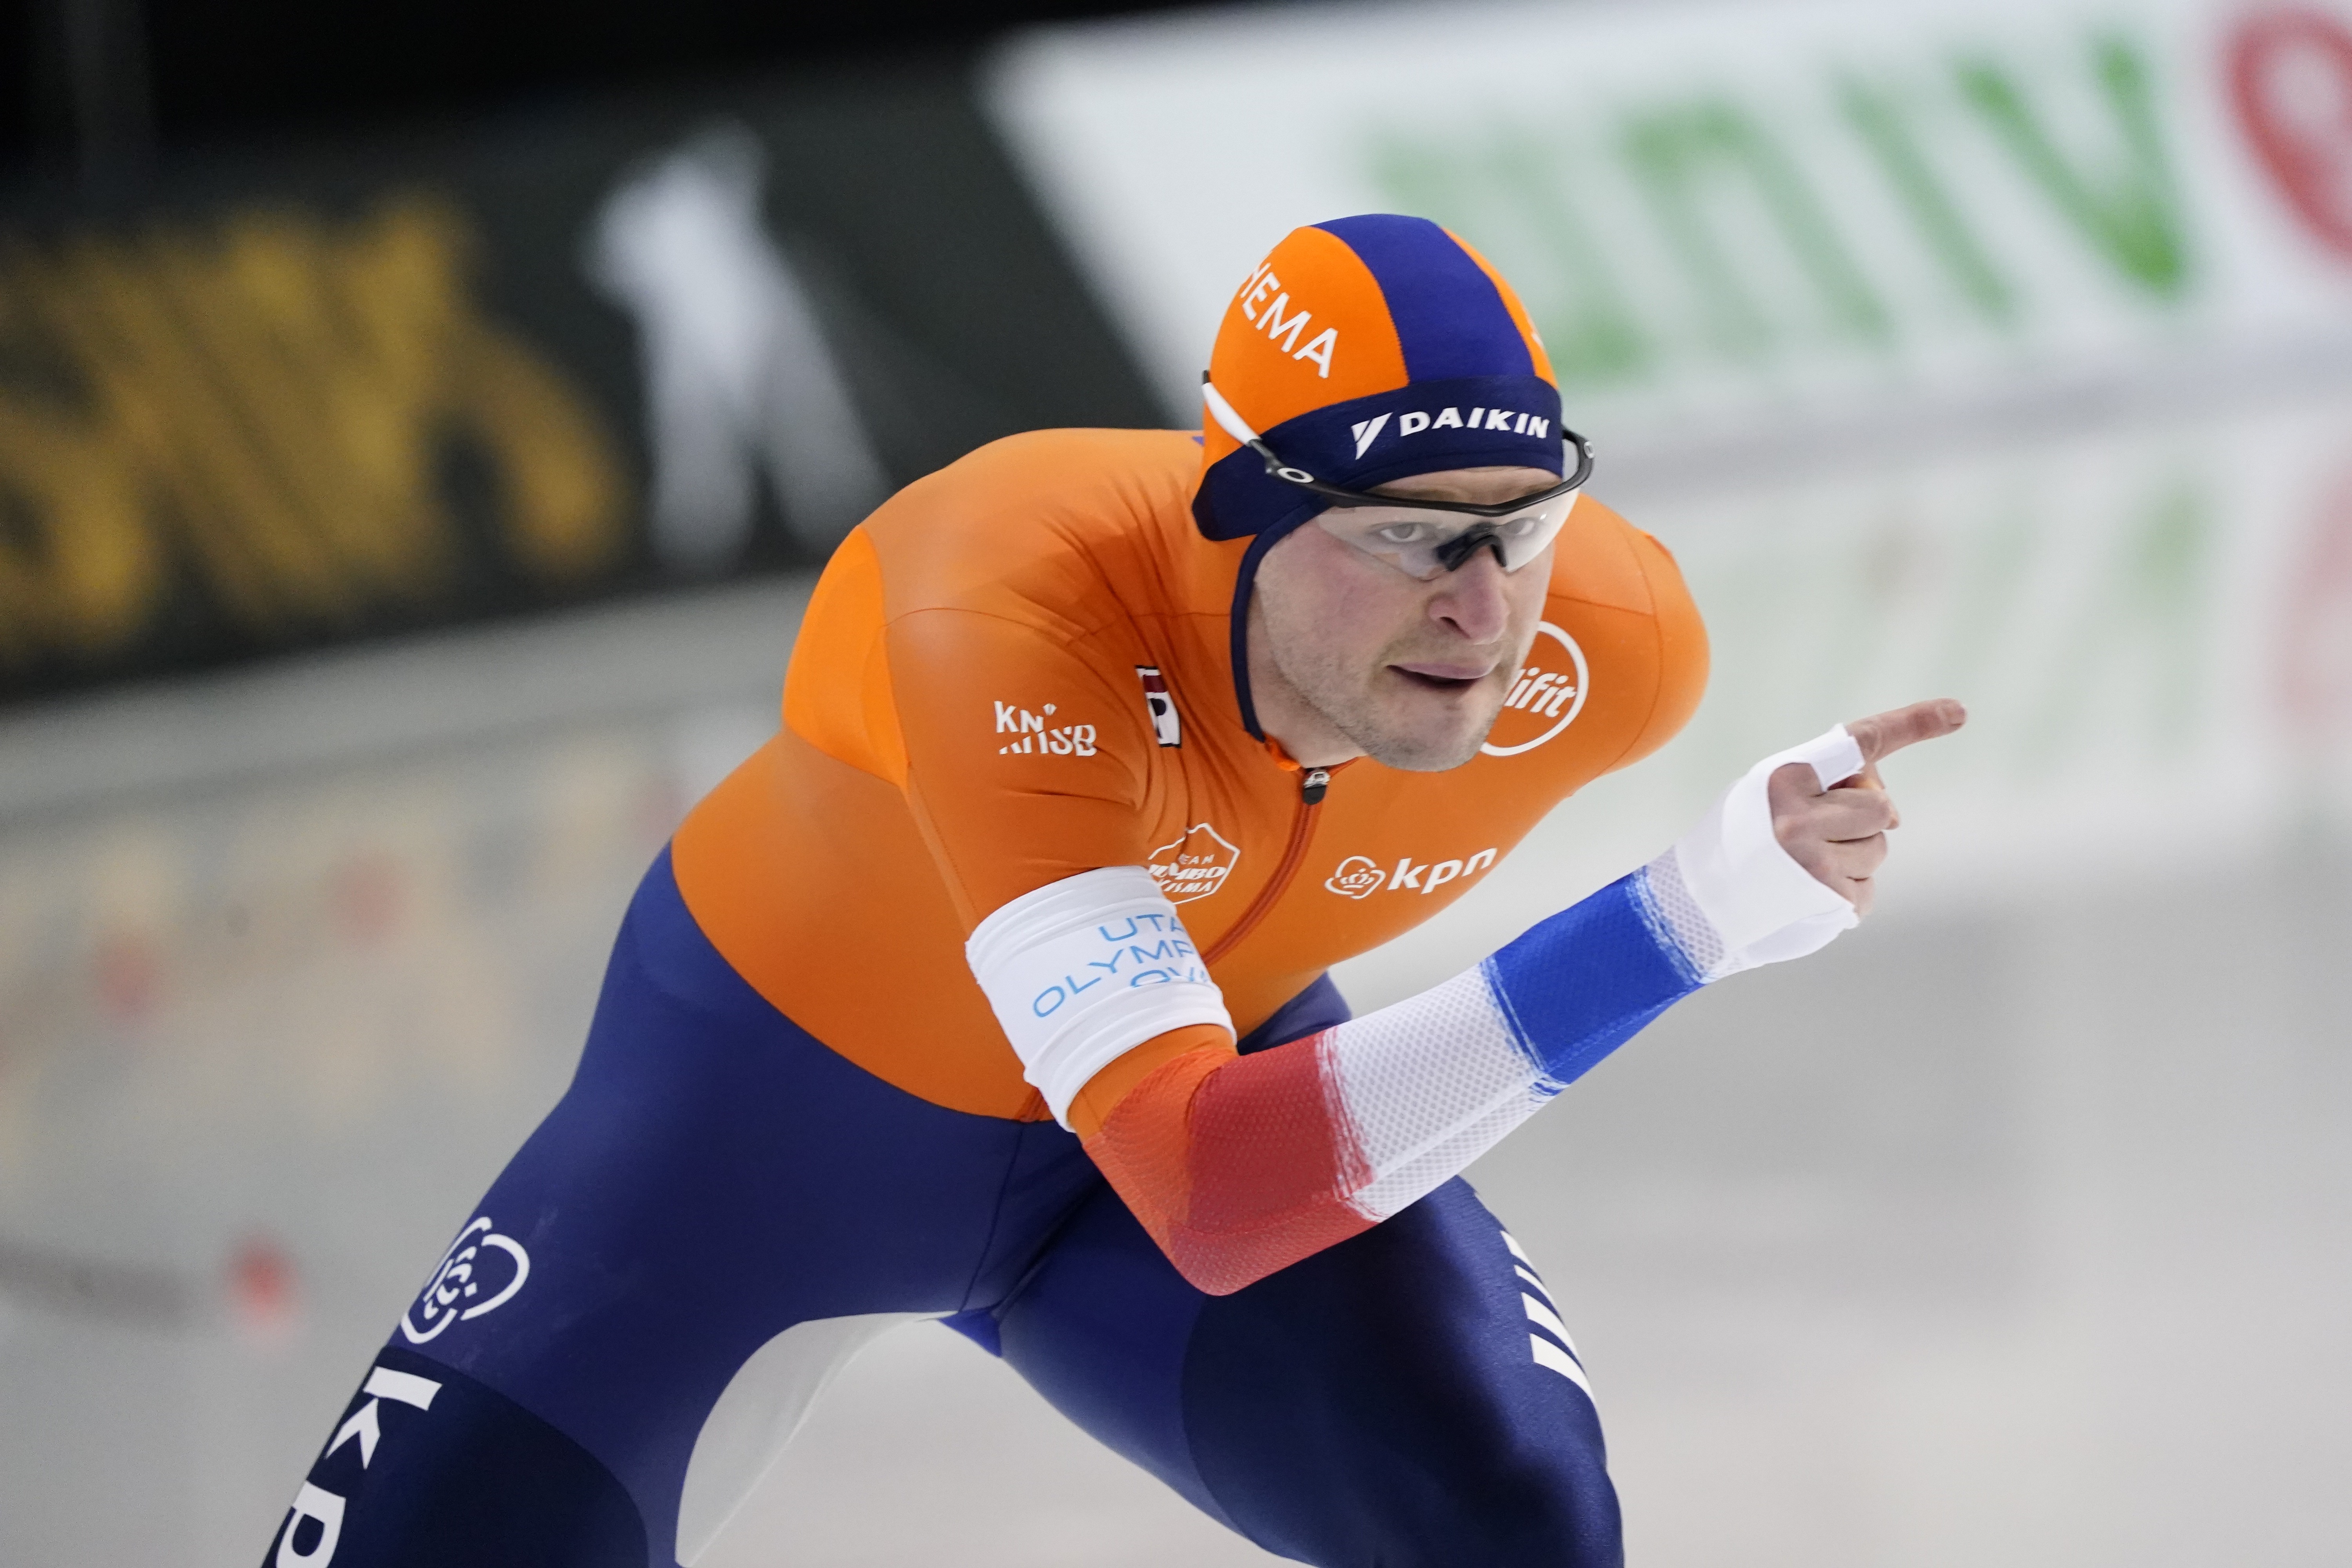 geur persoonlijkheid Puur Wüst en De Jong loten elkaar, Kramer tegen Pedersen op 5000 meter |  Schaatsen.nl